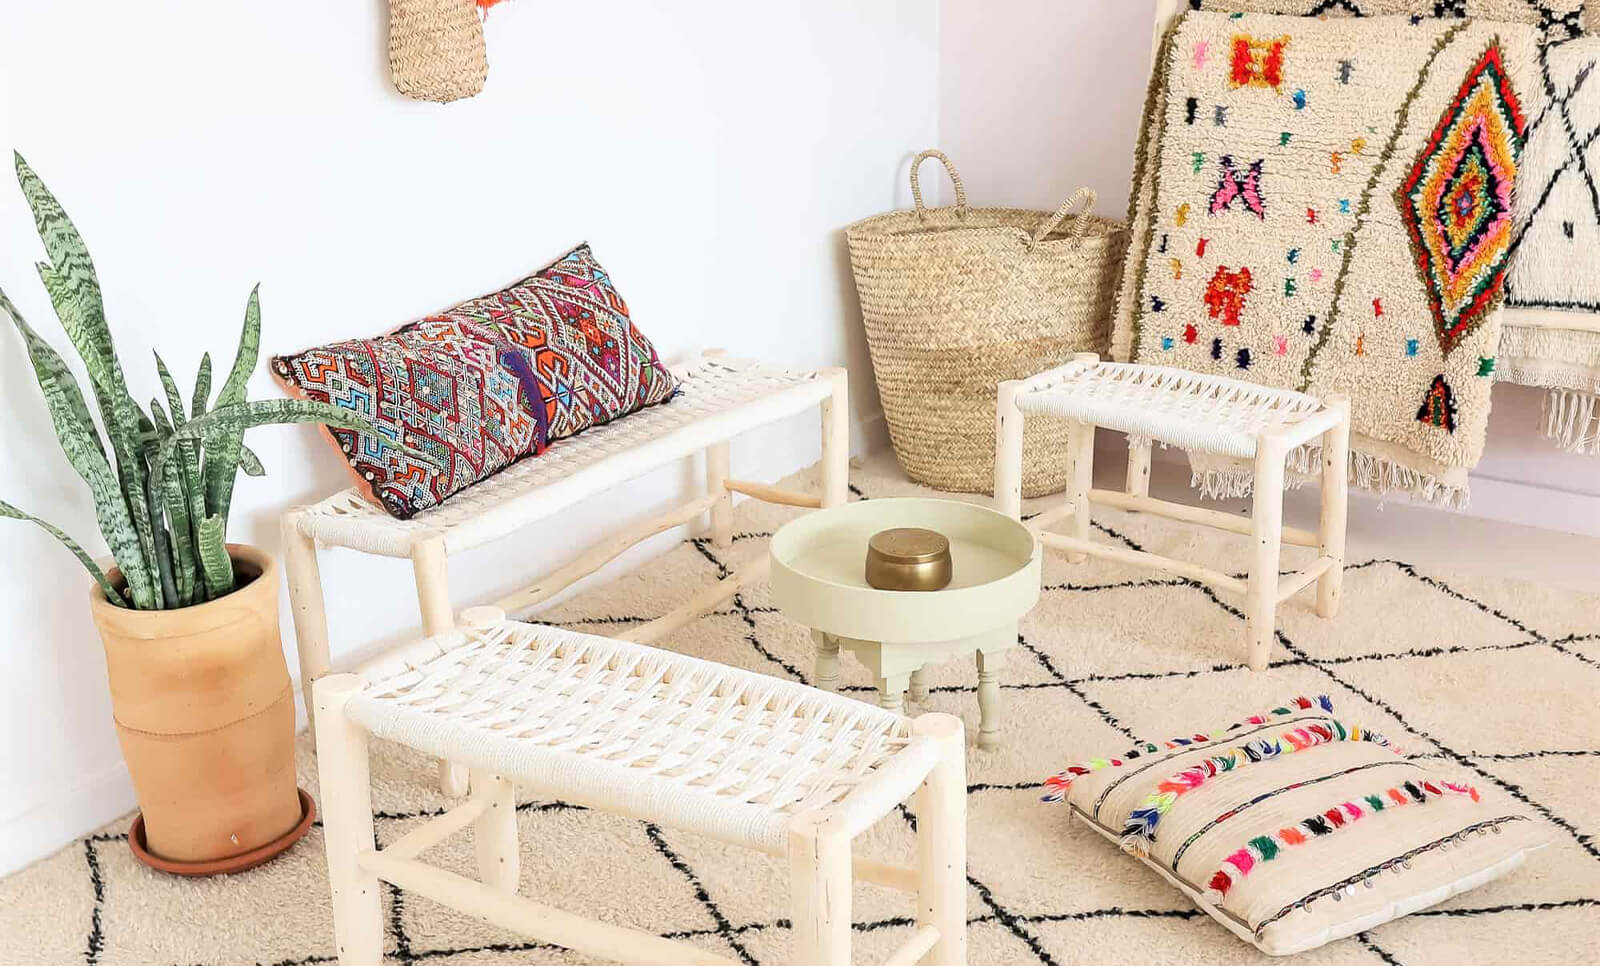 Buy a Berber carpet in Marrakech: Feedback